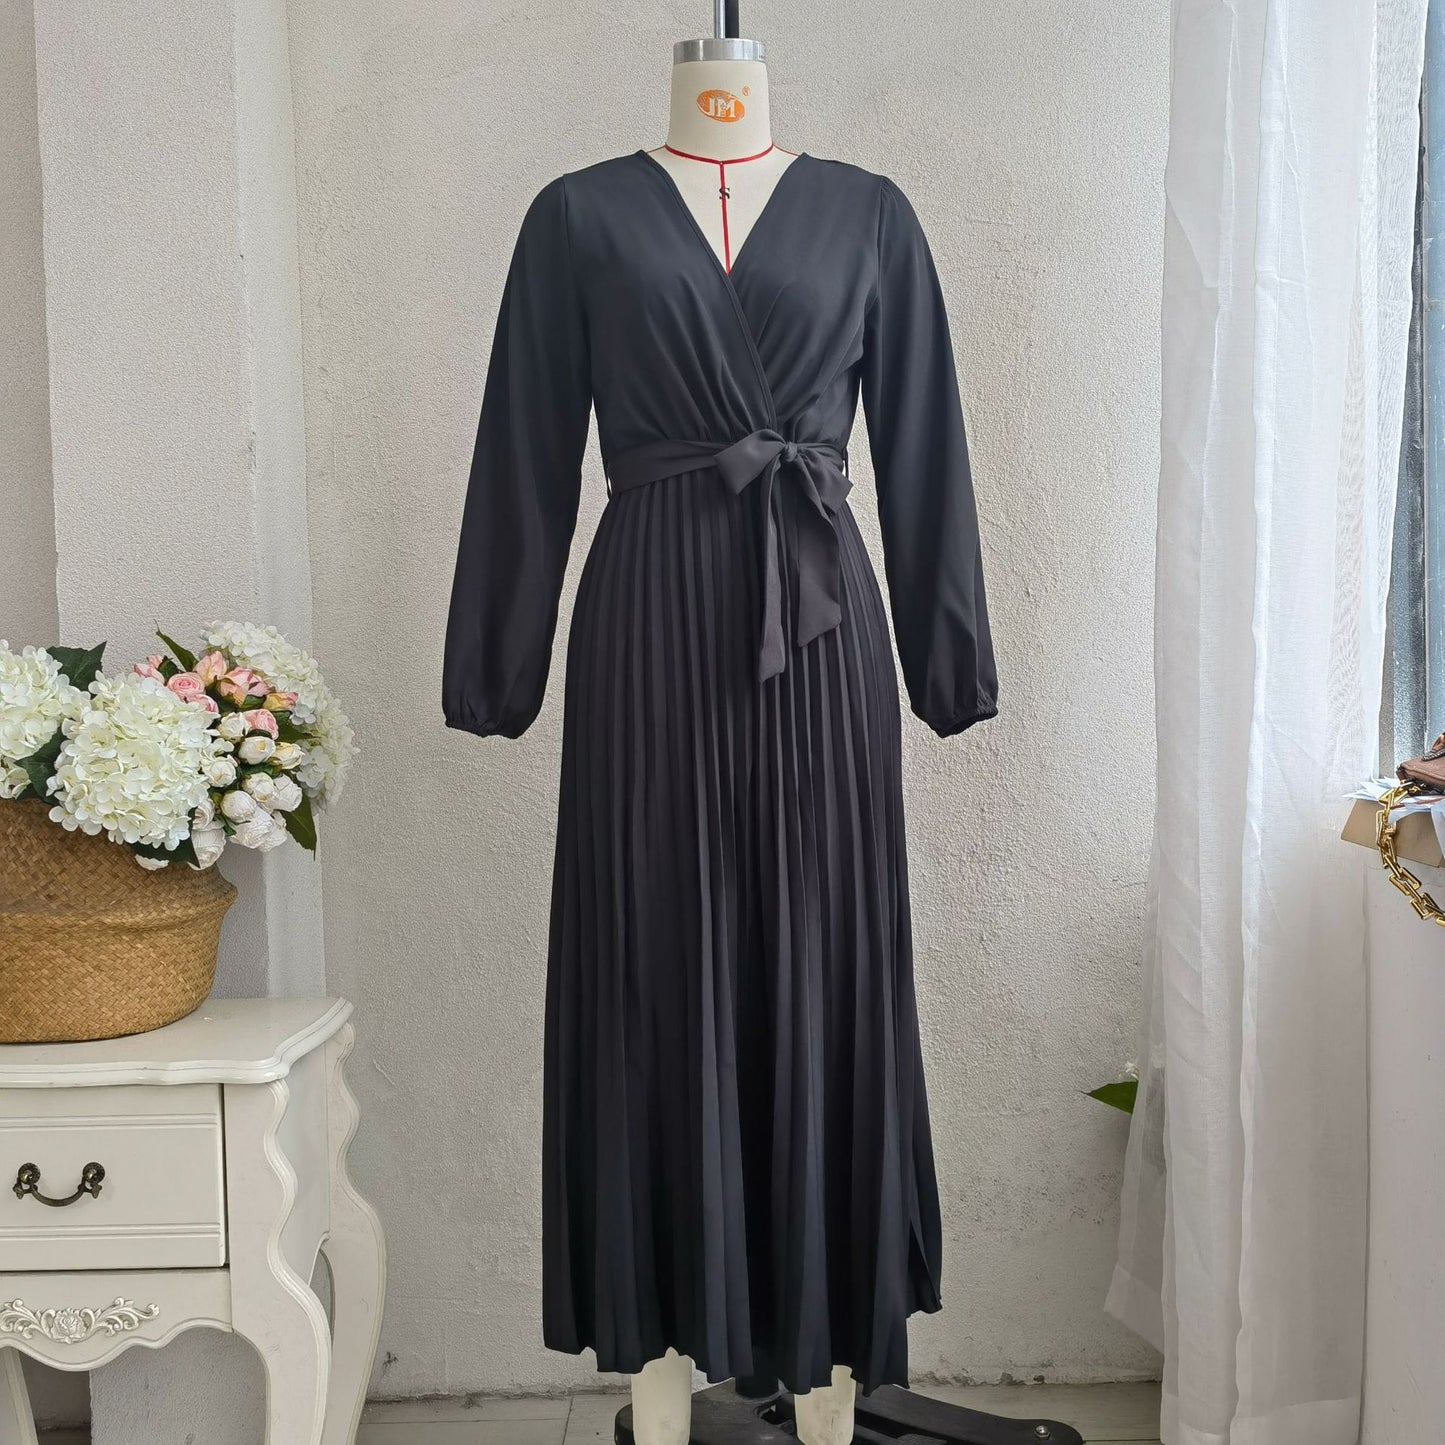 Popularna wiosenna letnia elegancka plisowana sukienka z dekoltem w kształcie litery V